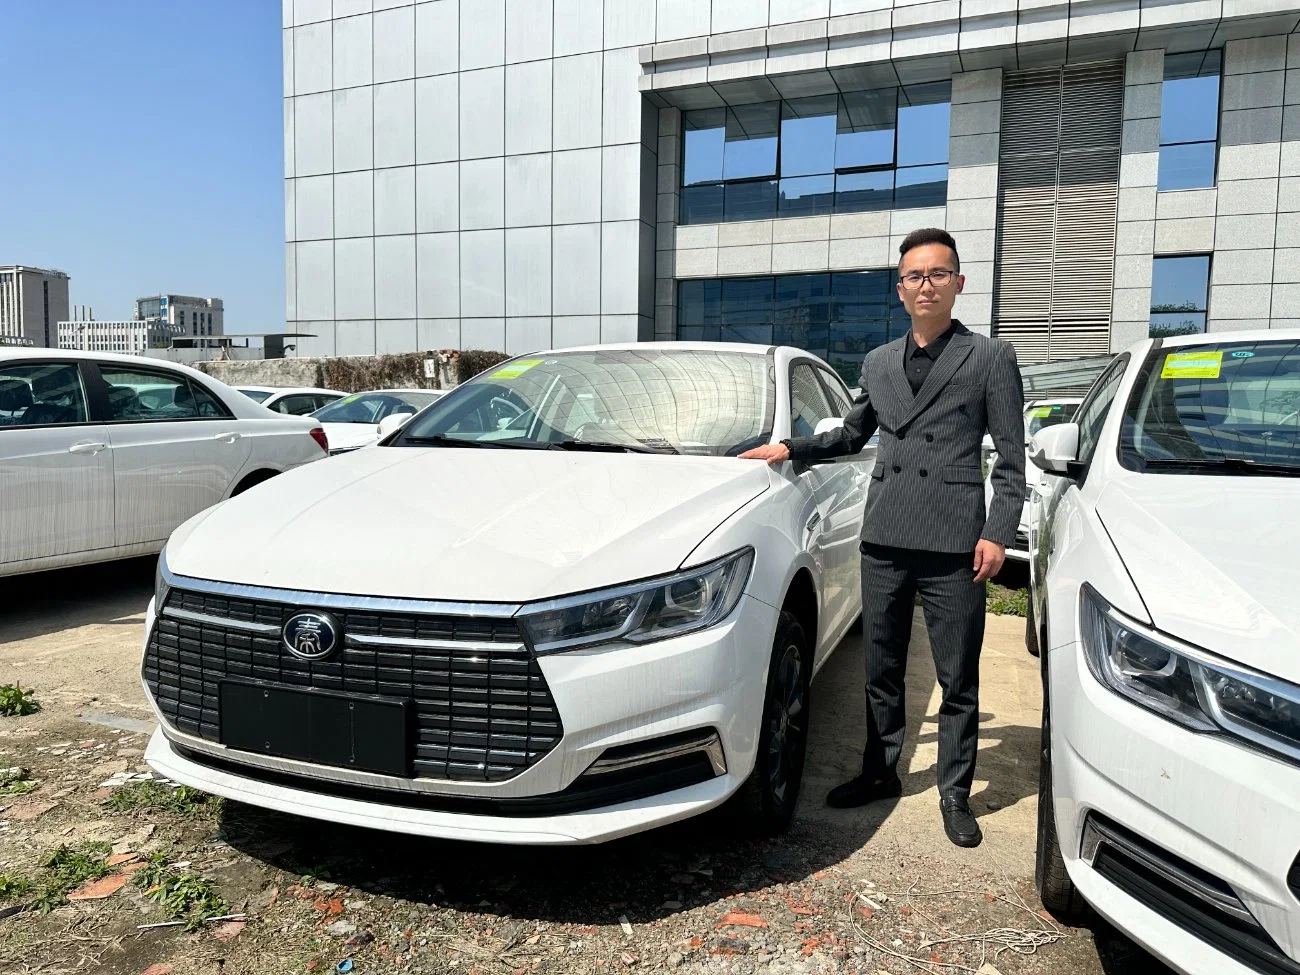 2023 BYD Последние Qin City Auto дешево высокая скорость длиной Range New Energy Battery EV uesd Electrical Electric Car